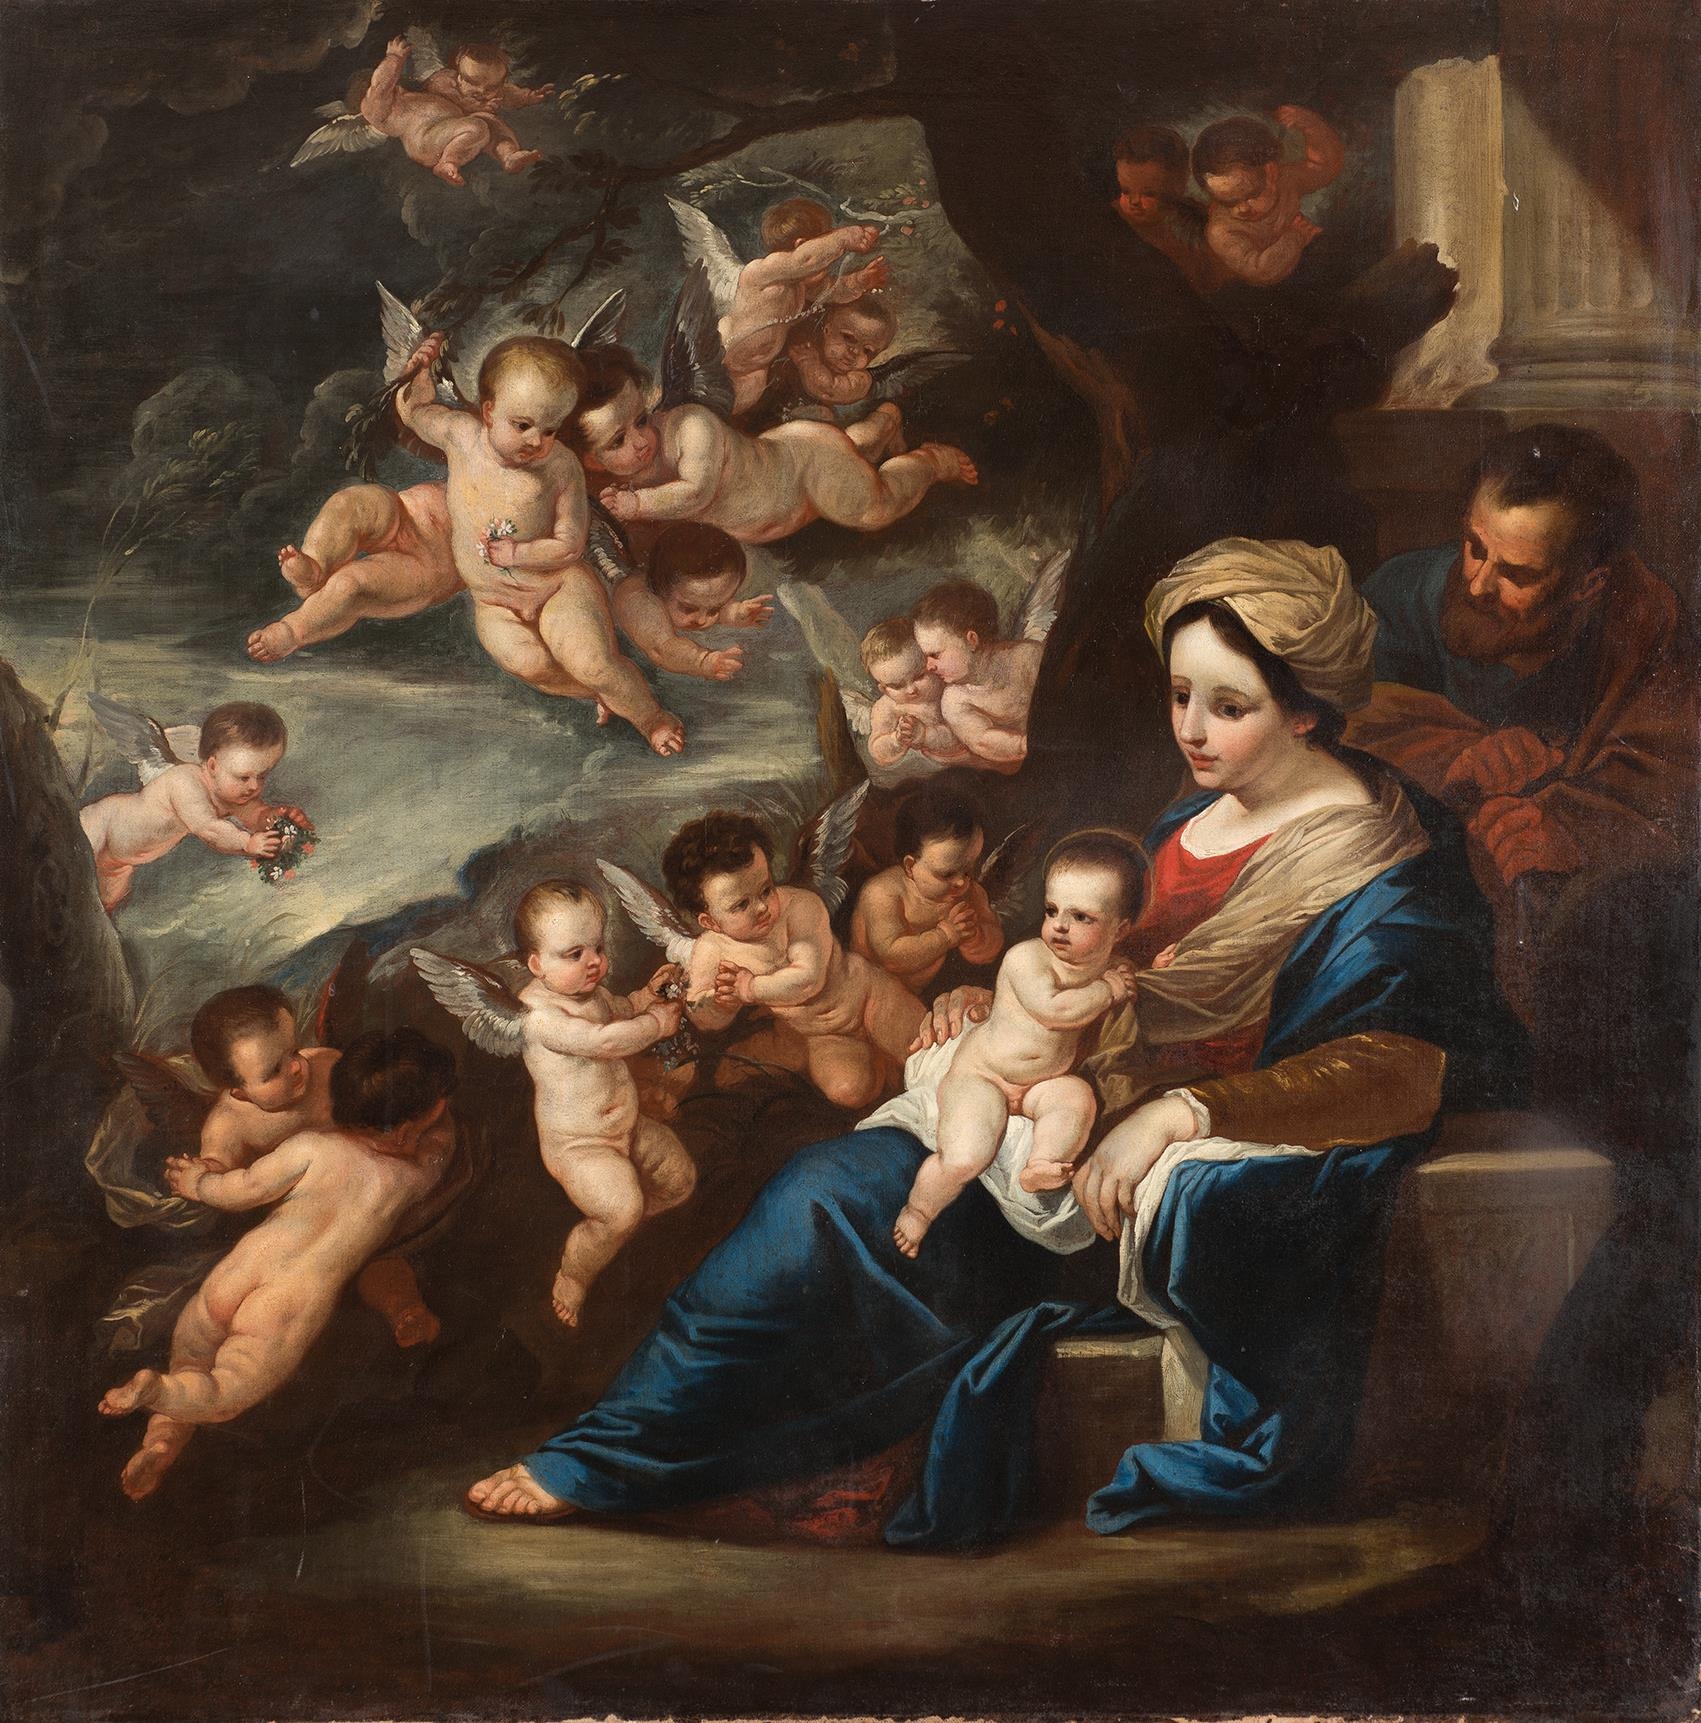 Sacra famiglia confortata dagli Angeli by Luca Giordano